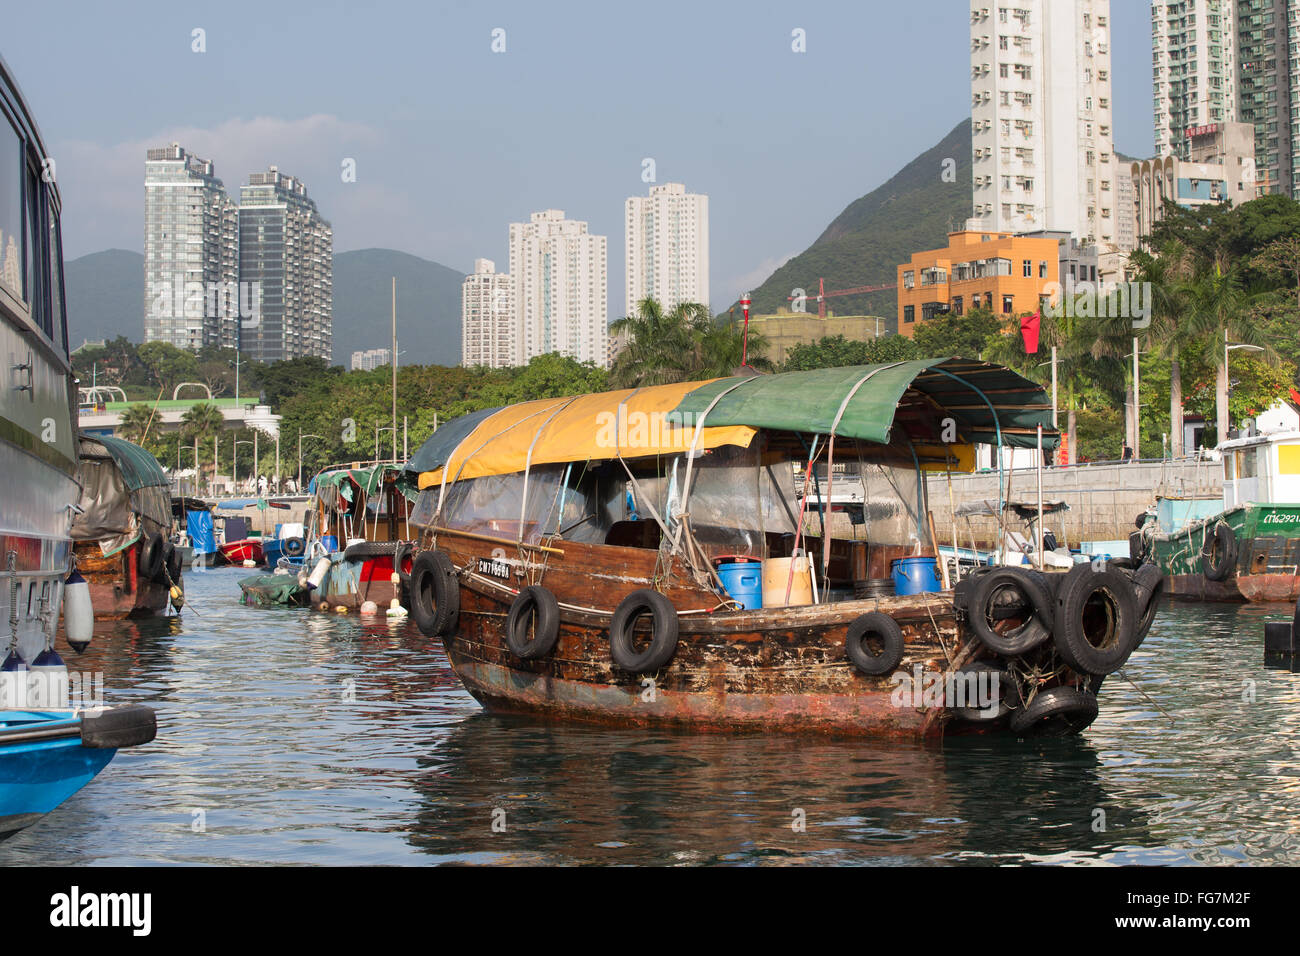 Aberdeen Harbour - Hong Kong Stock Photo